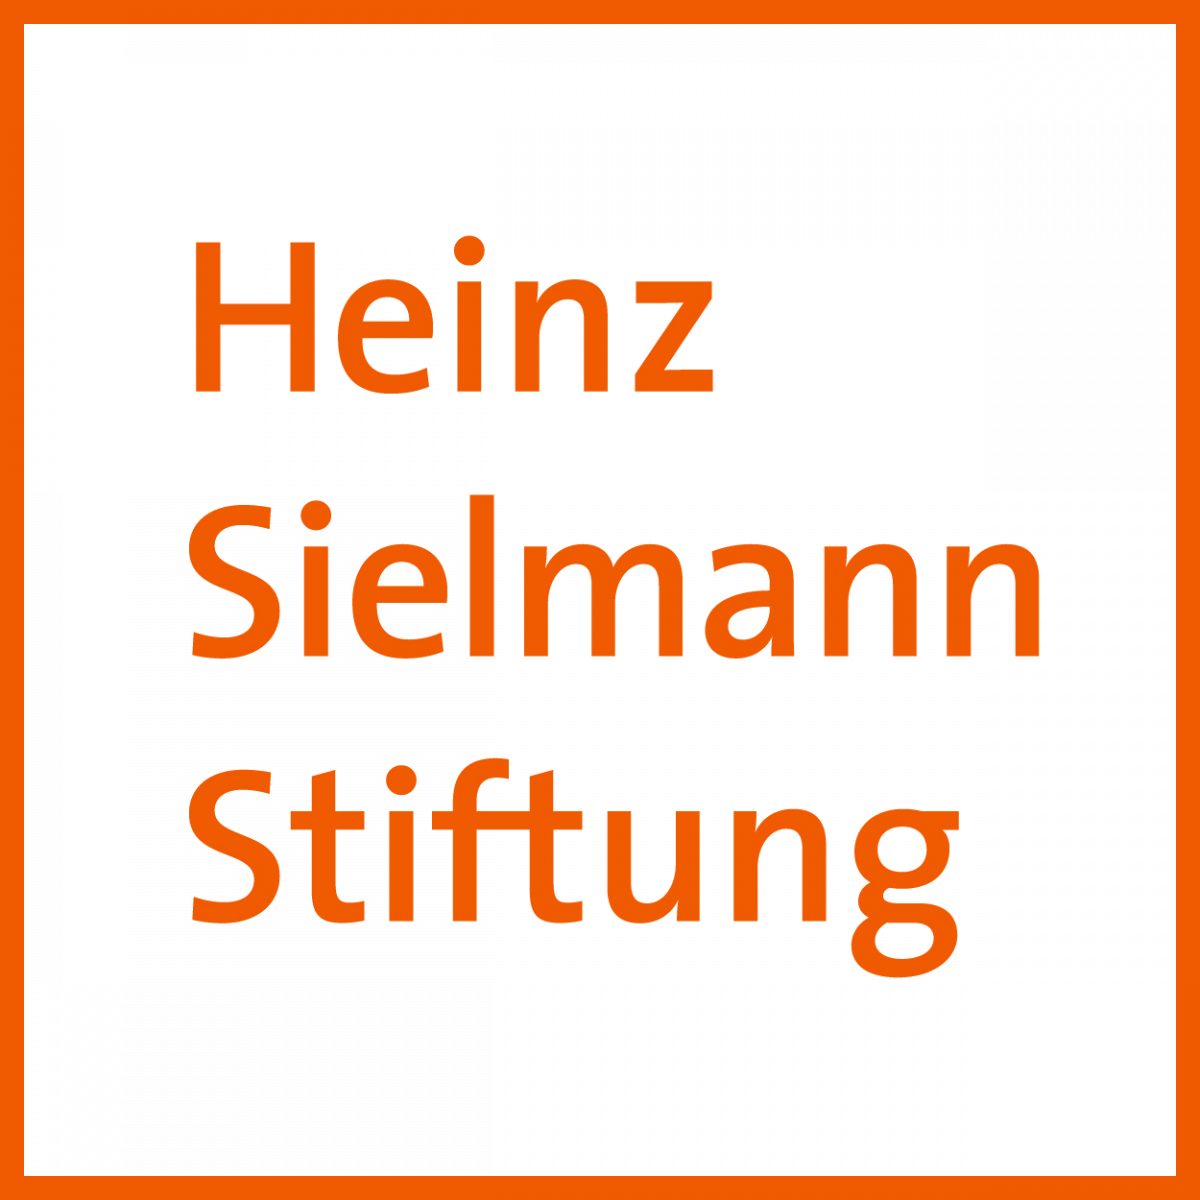 Logo Heinz Sielmann Stiftung